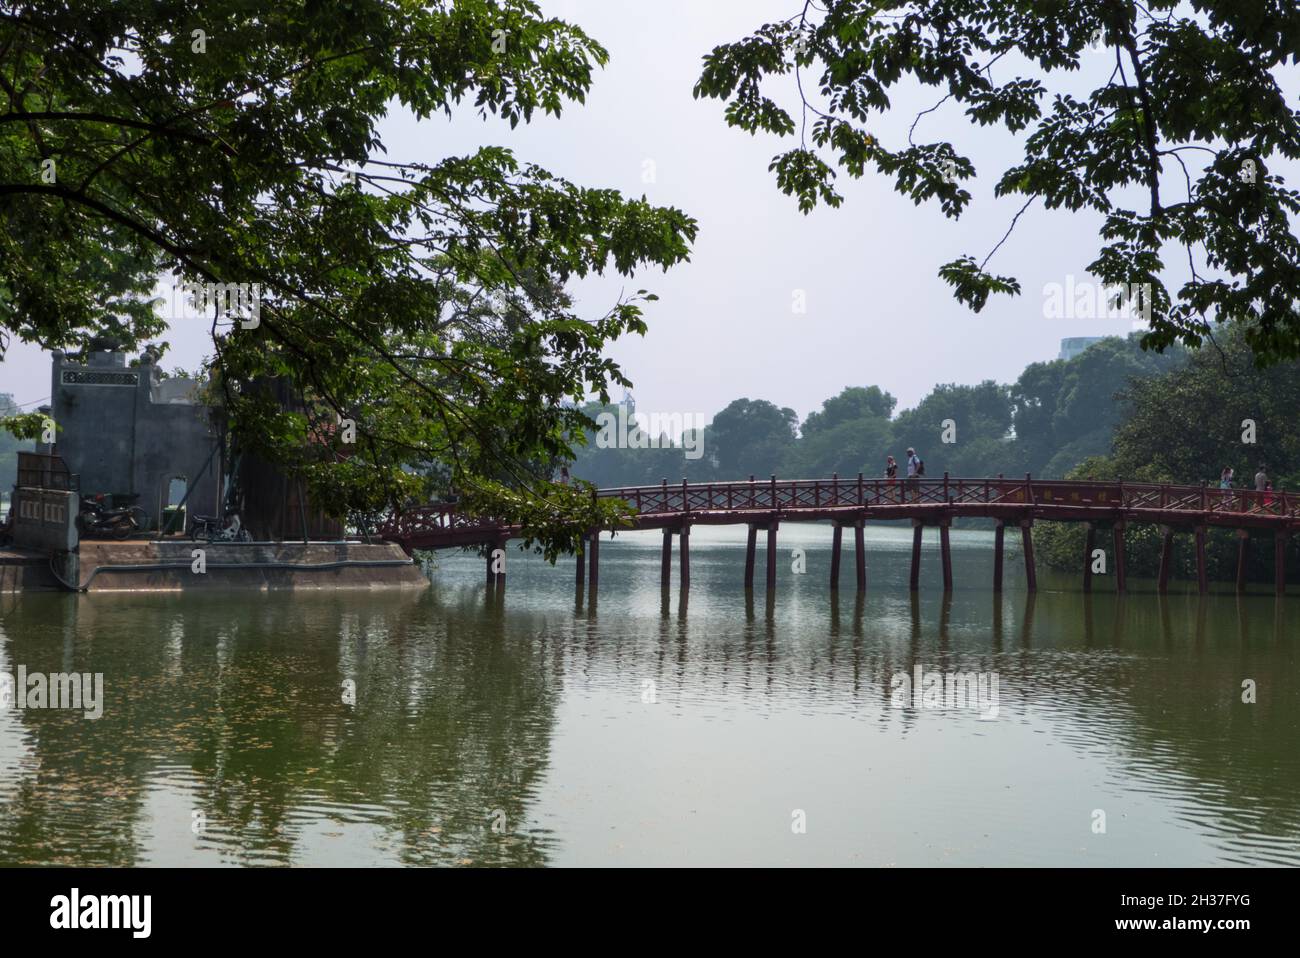 Le pont Thê Húc (le pont du soleil du matin accueillant), qui donne accès à Đền Ngọc Sơn (temple de la montagne de Jade), le lac Hoàn Kiếm, Hanoi, Vietnam Banque D'Images